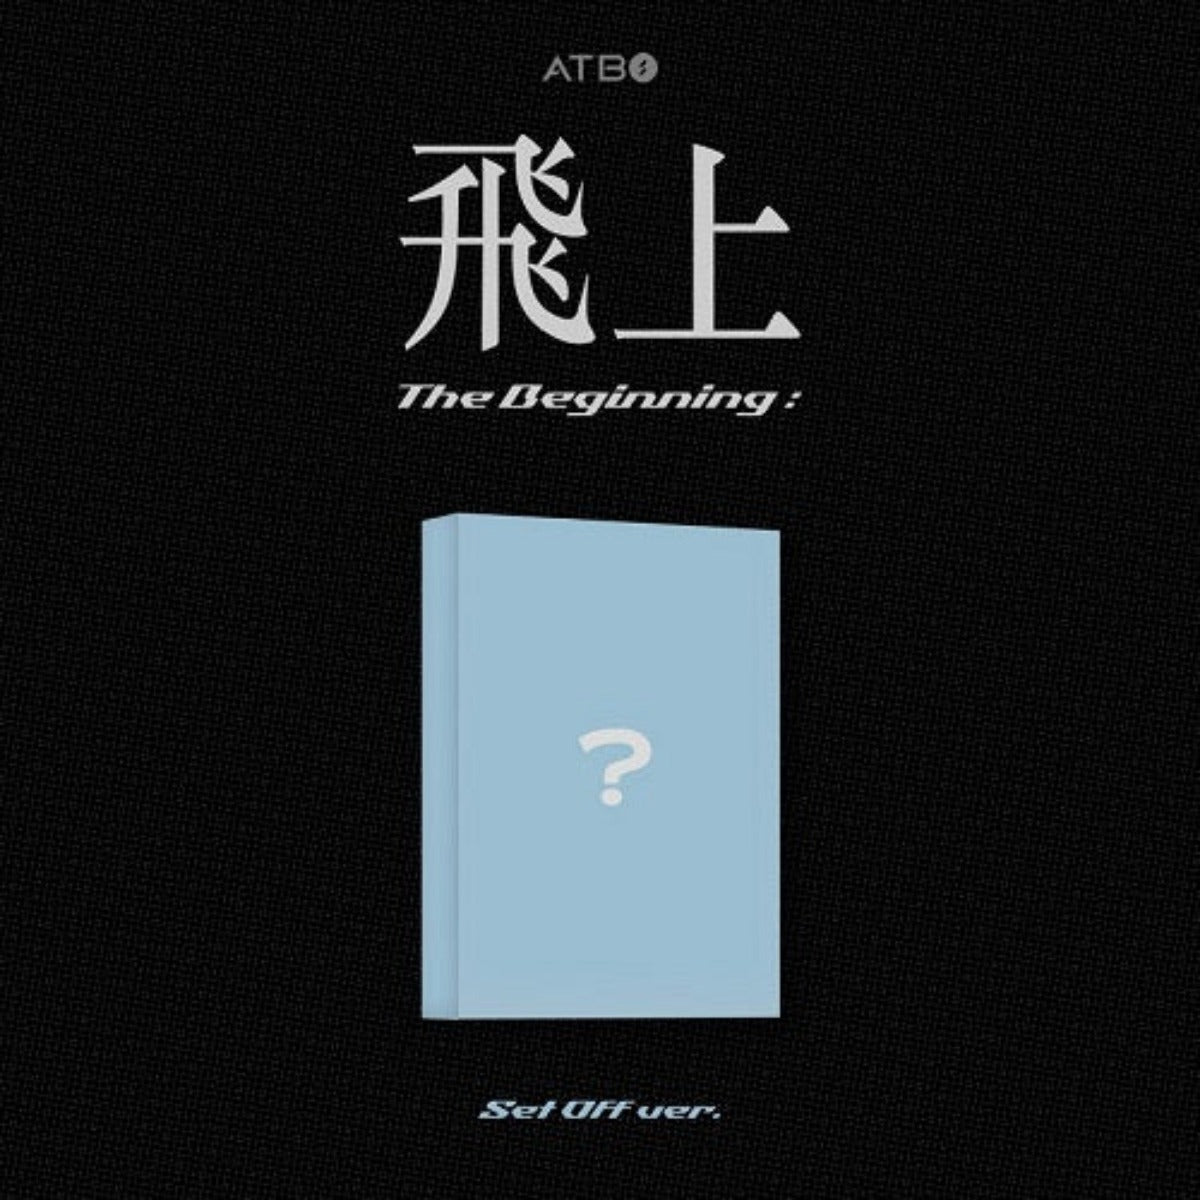 ATBO Mini Album Vol. 3 - The Beginning : 飛上 (Set Off Version) (META Album)